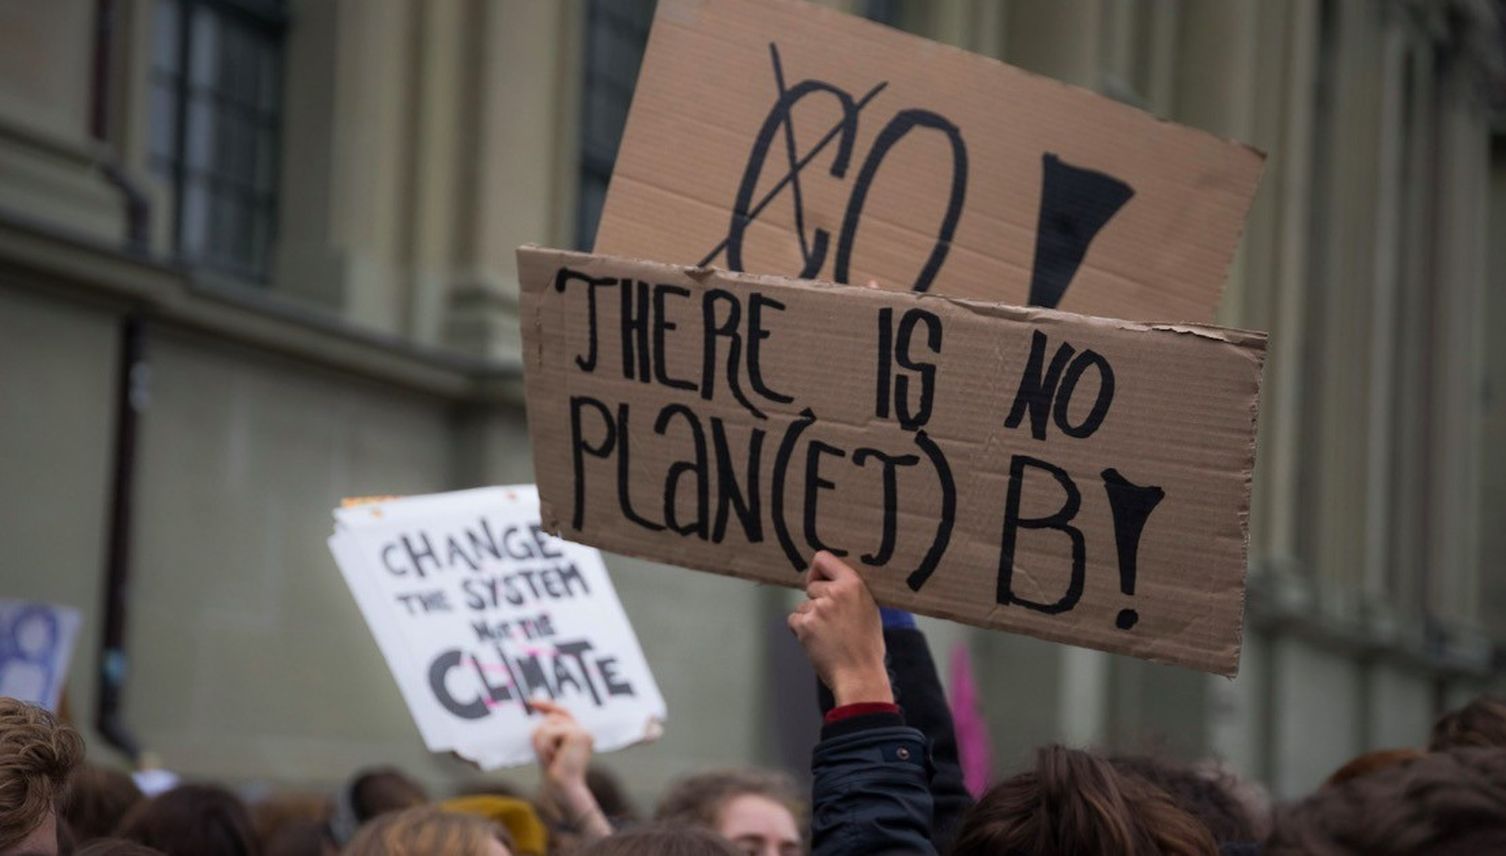 Stadt Luzern spricht nun von «Klimakrise» statt -wandel